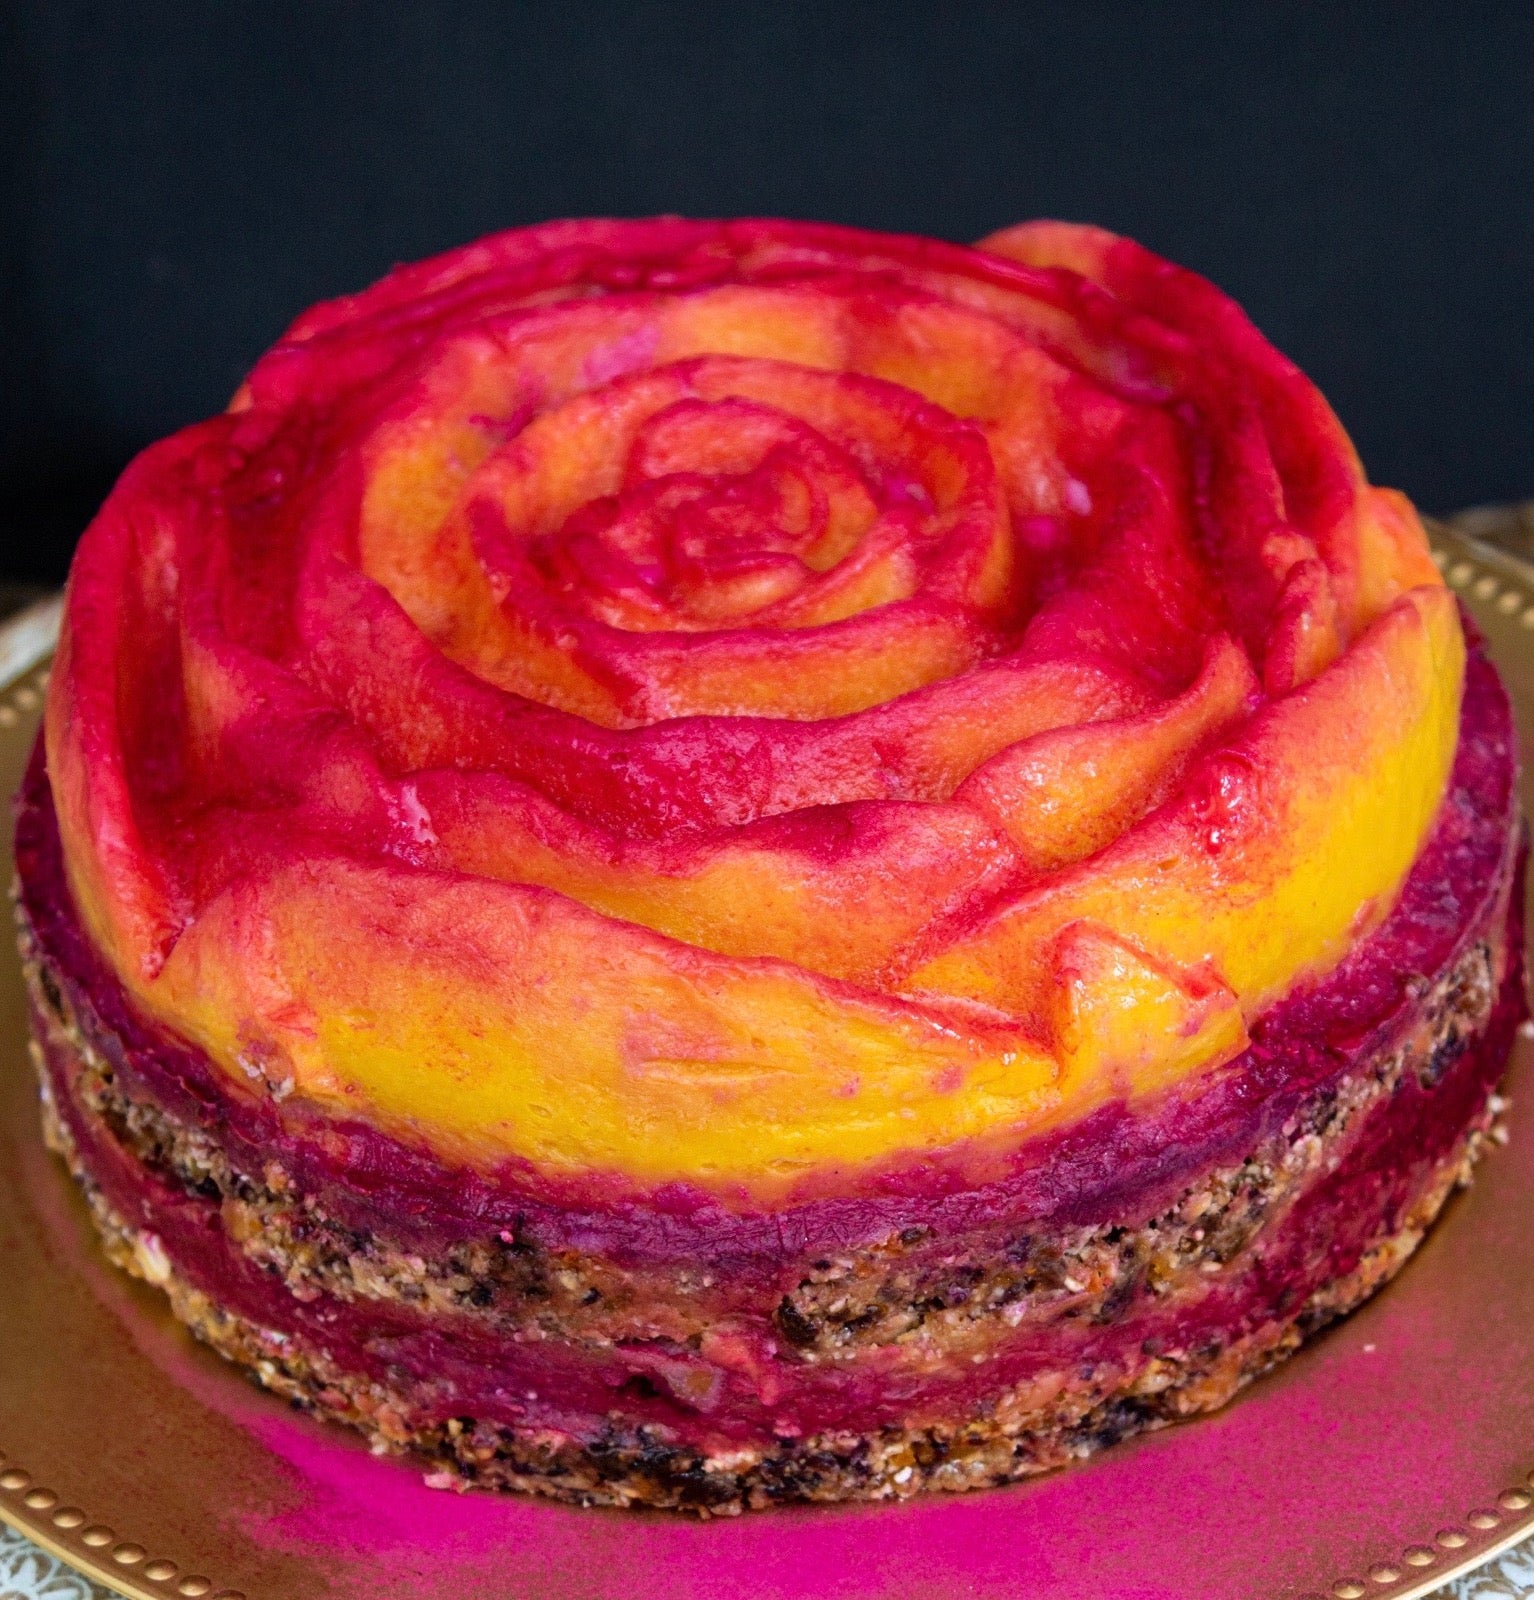 Gâteau 2 ans rose poudré de princesse vegan, sans gluten